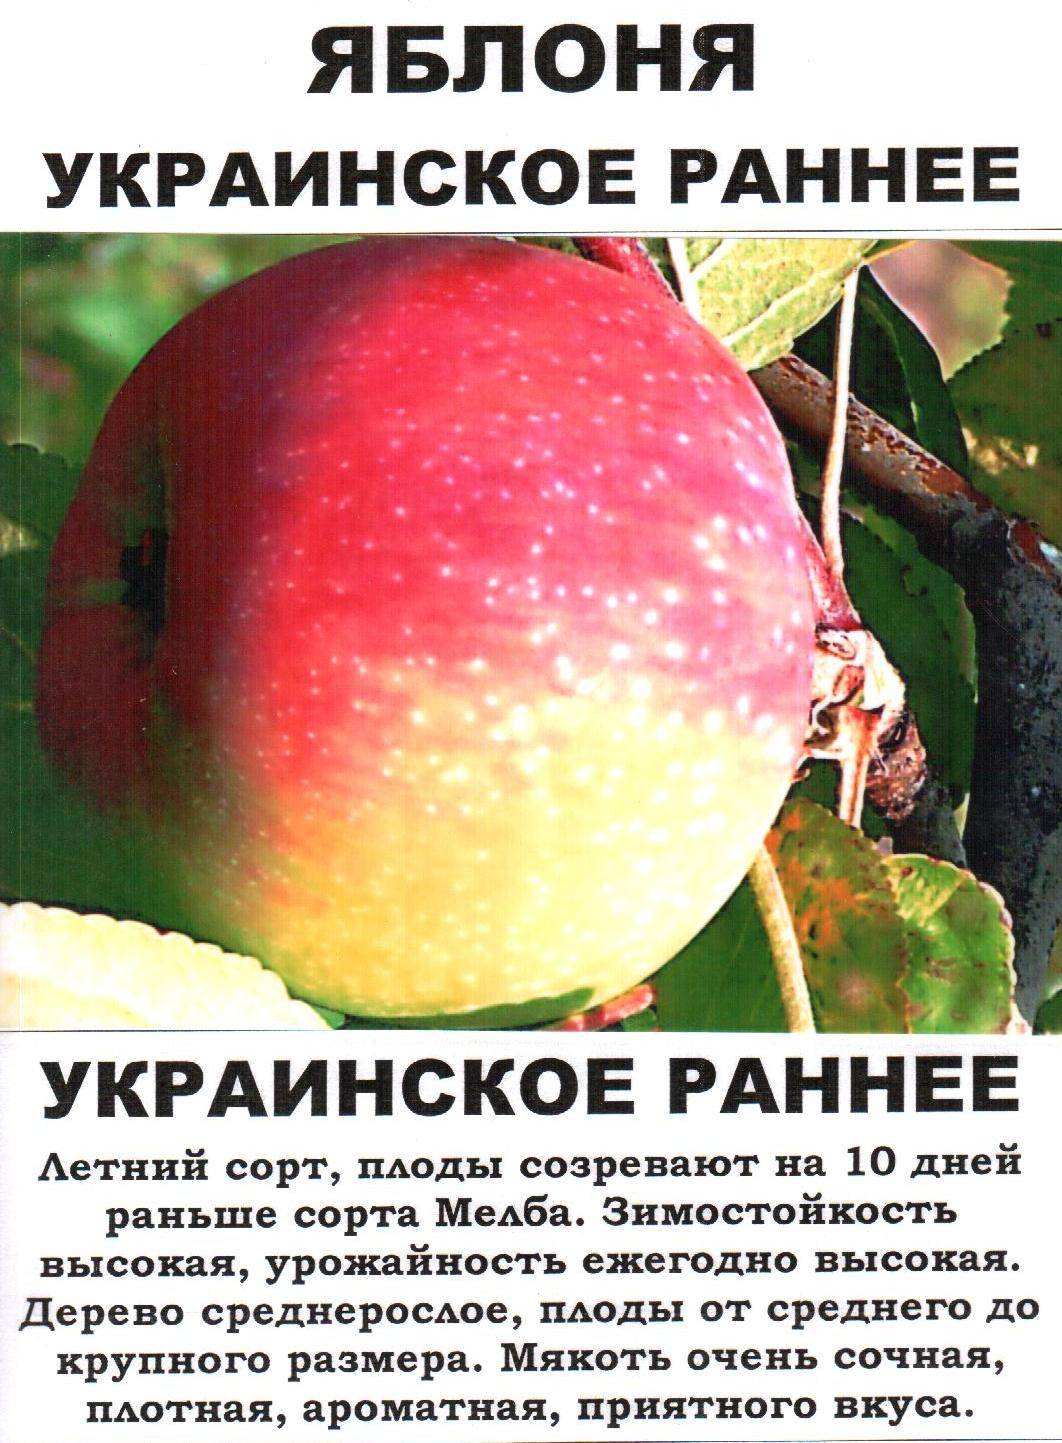 Название яблонь с фото и описанием. Яблоня украинская ранняя. Описание сортов яблок. Сорт яблони украинское раннее. Ранние сорта яблок.